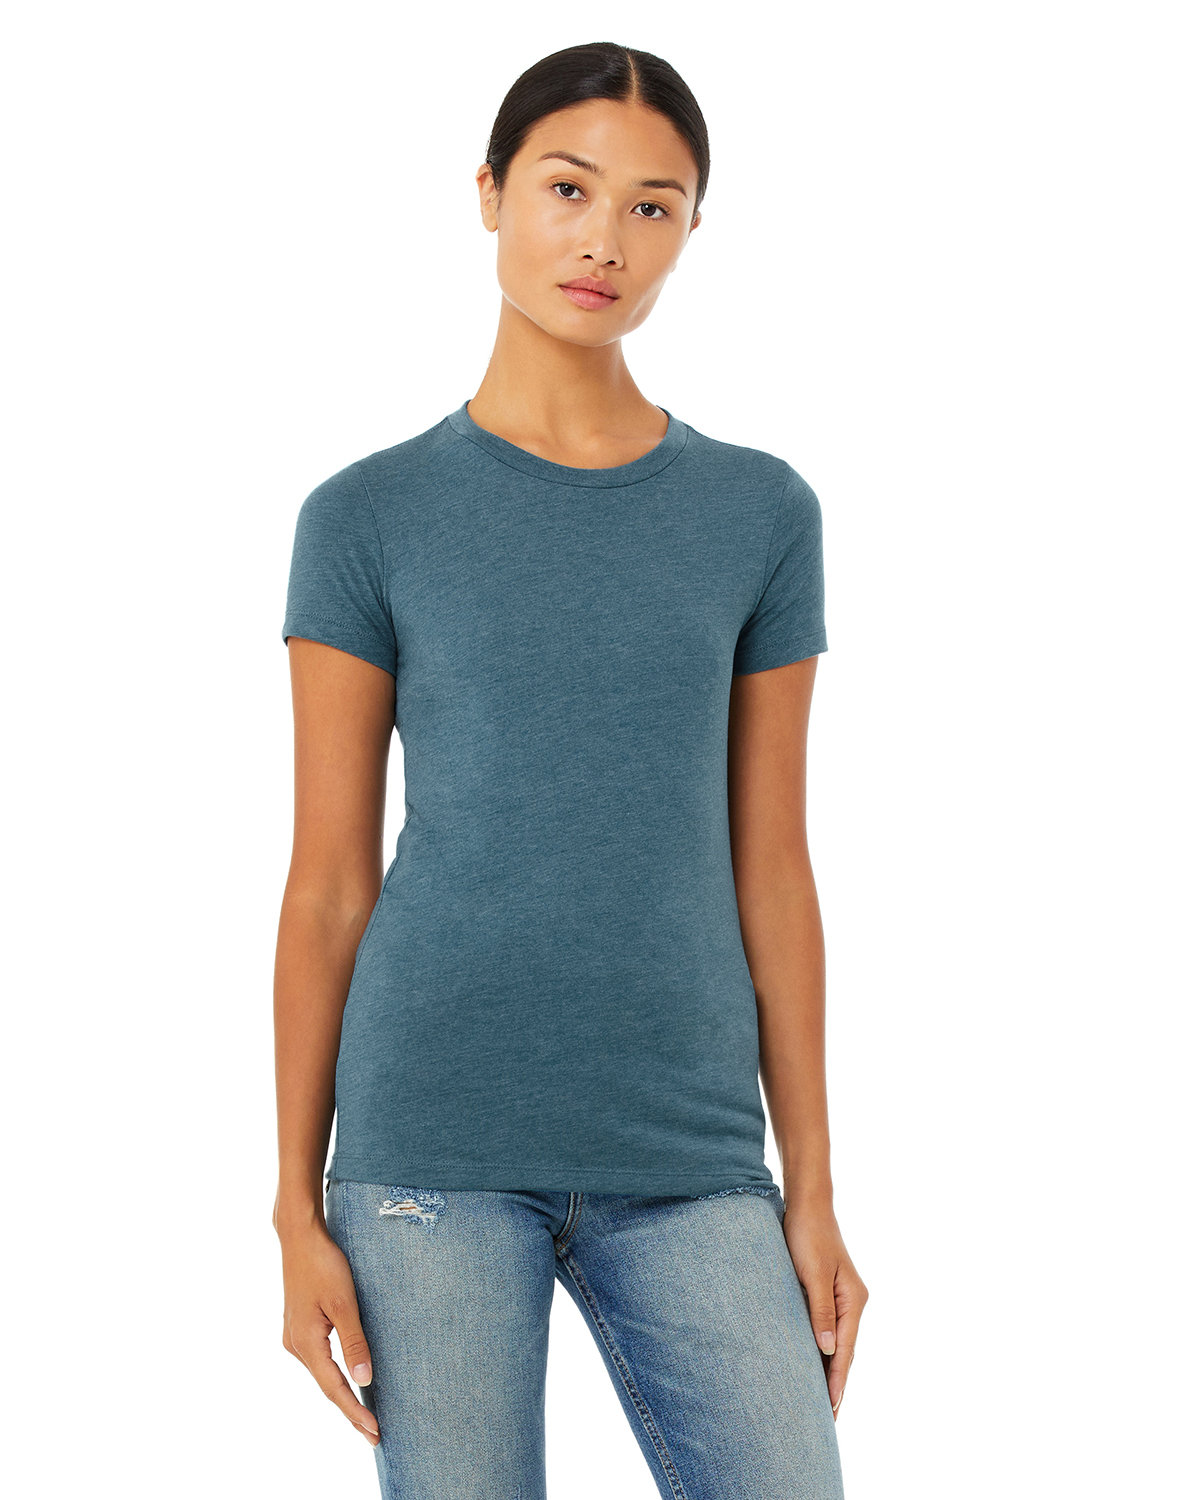 Bella + Canvas Ladies' Slim Fit T-Shirt HTHR DEEP TEAL 